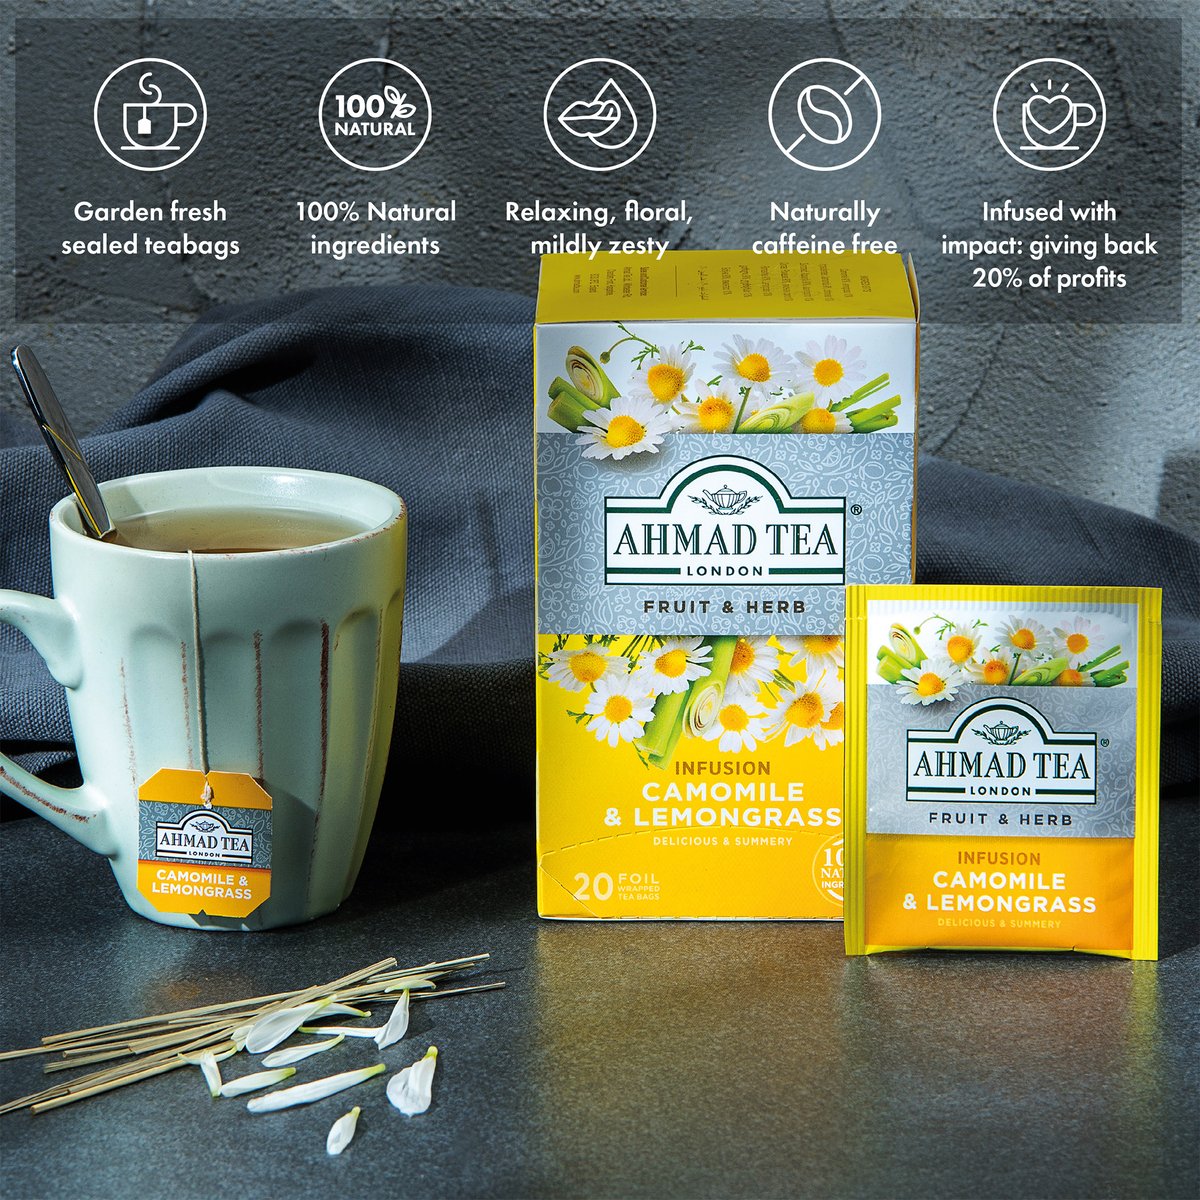 Ahmad Tea Camomile & Lemon Grass Tea 20 Teabags